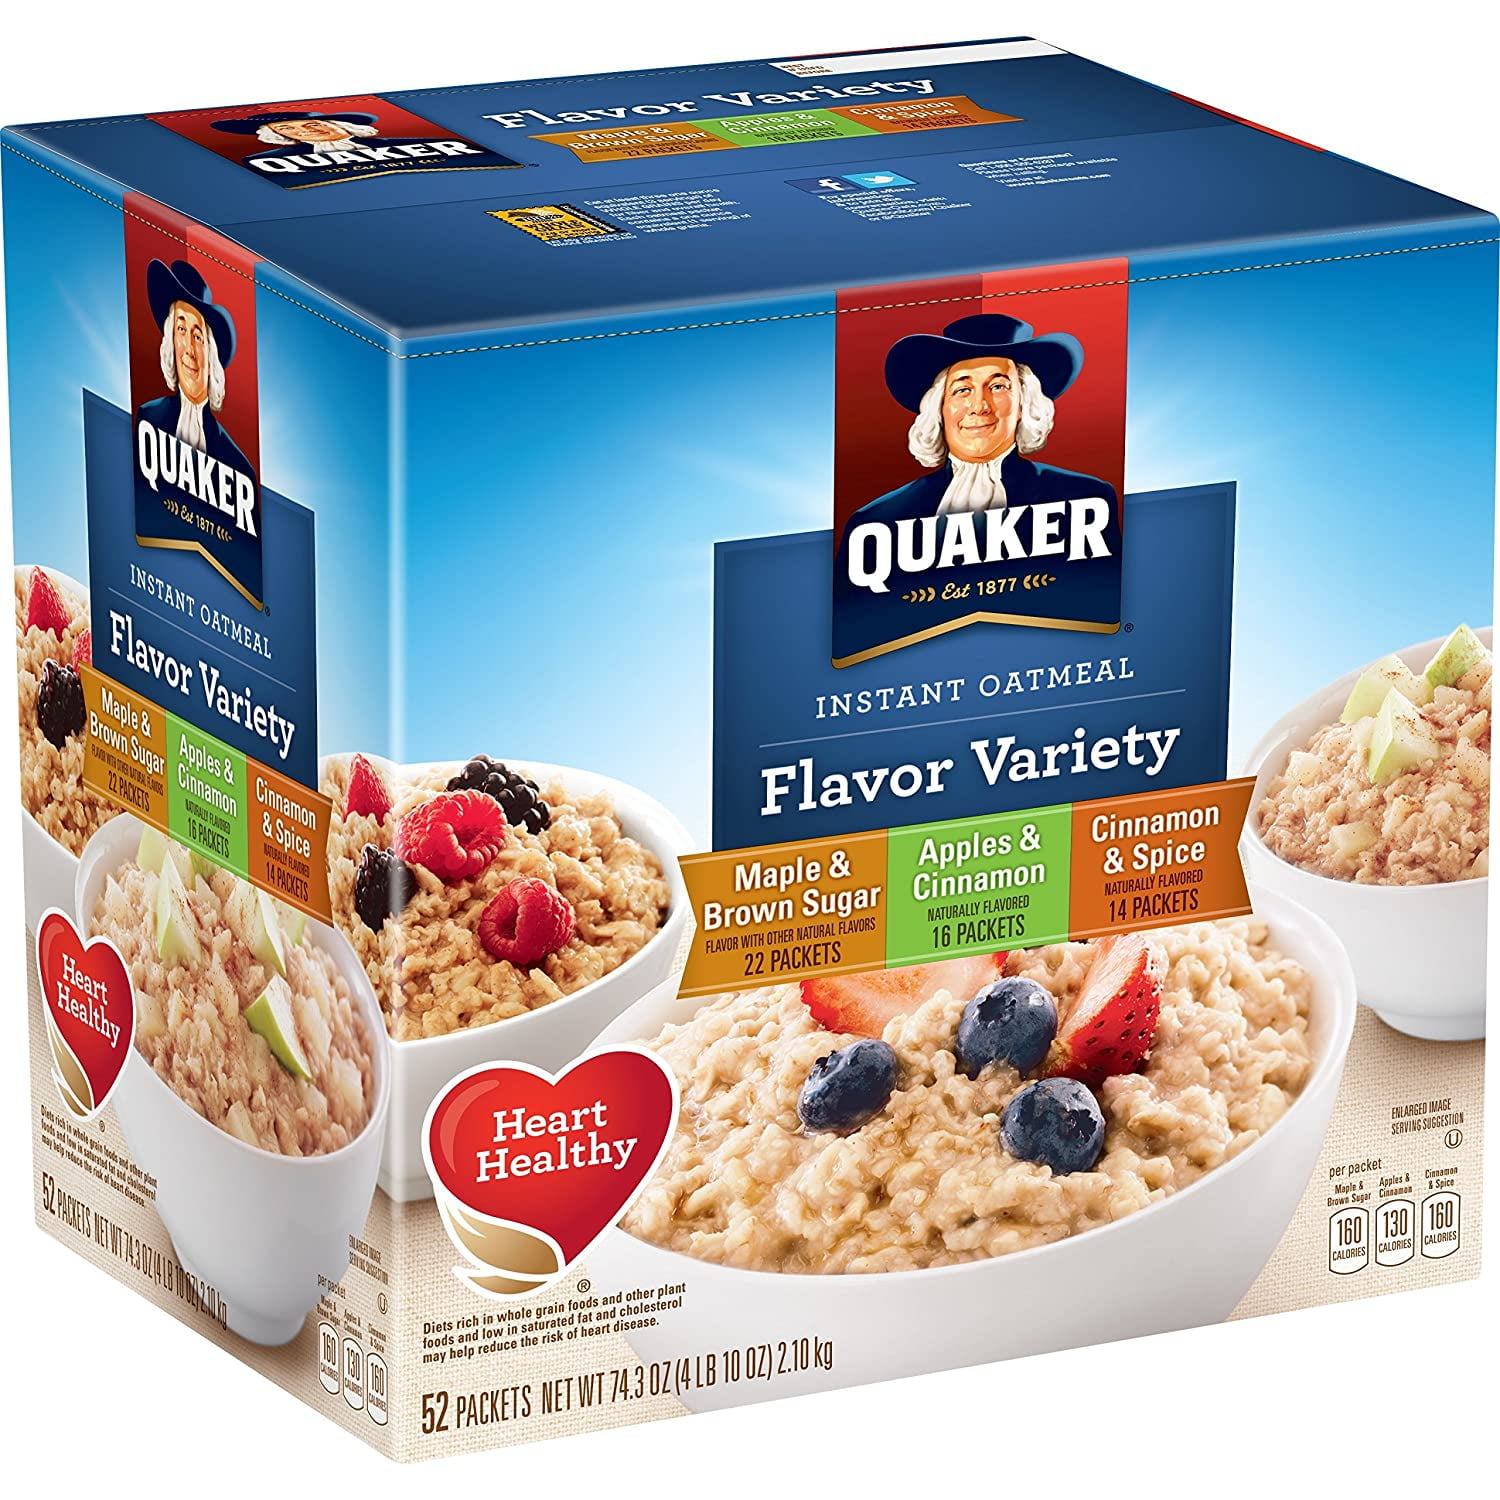 Who Has Quaker Oatmeal On Sale